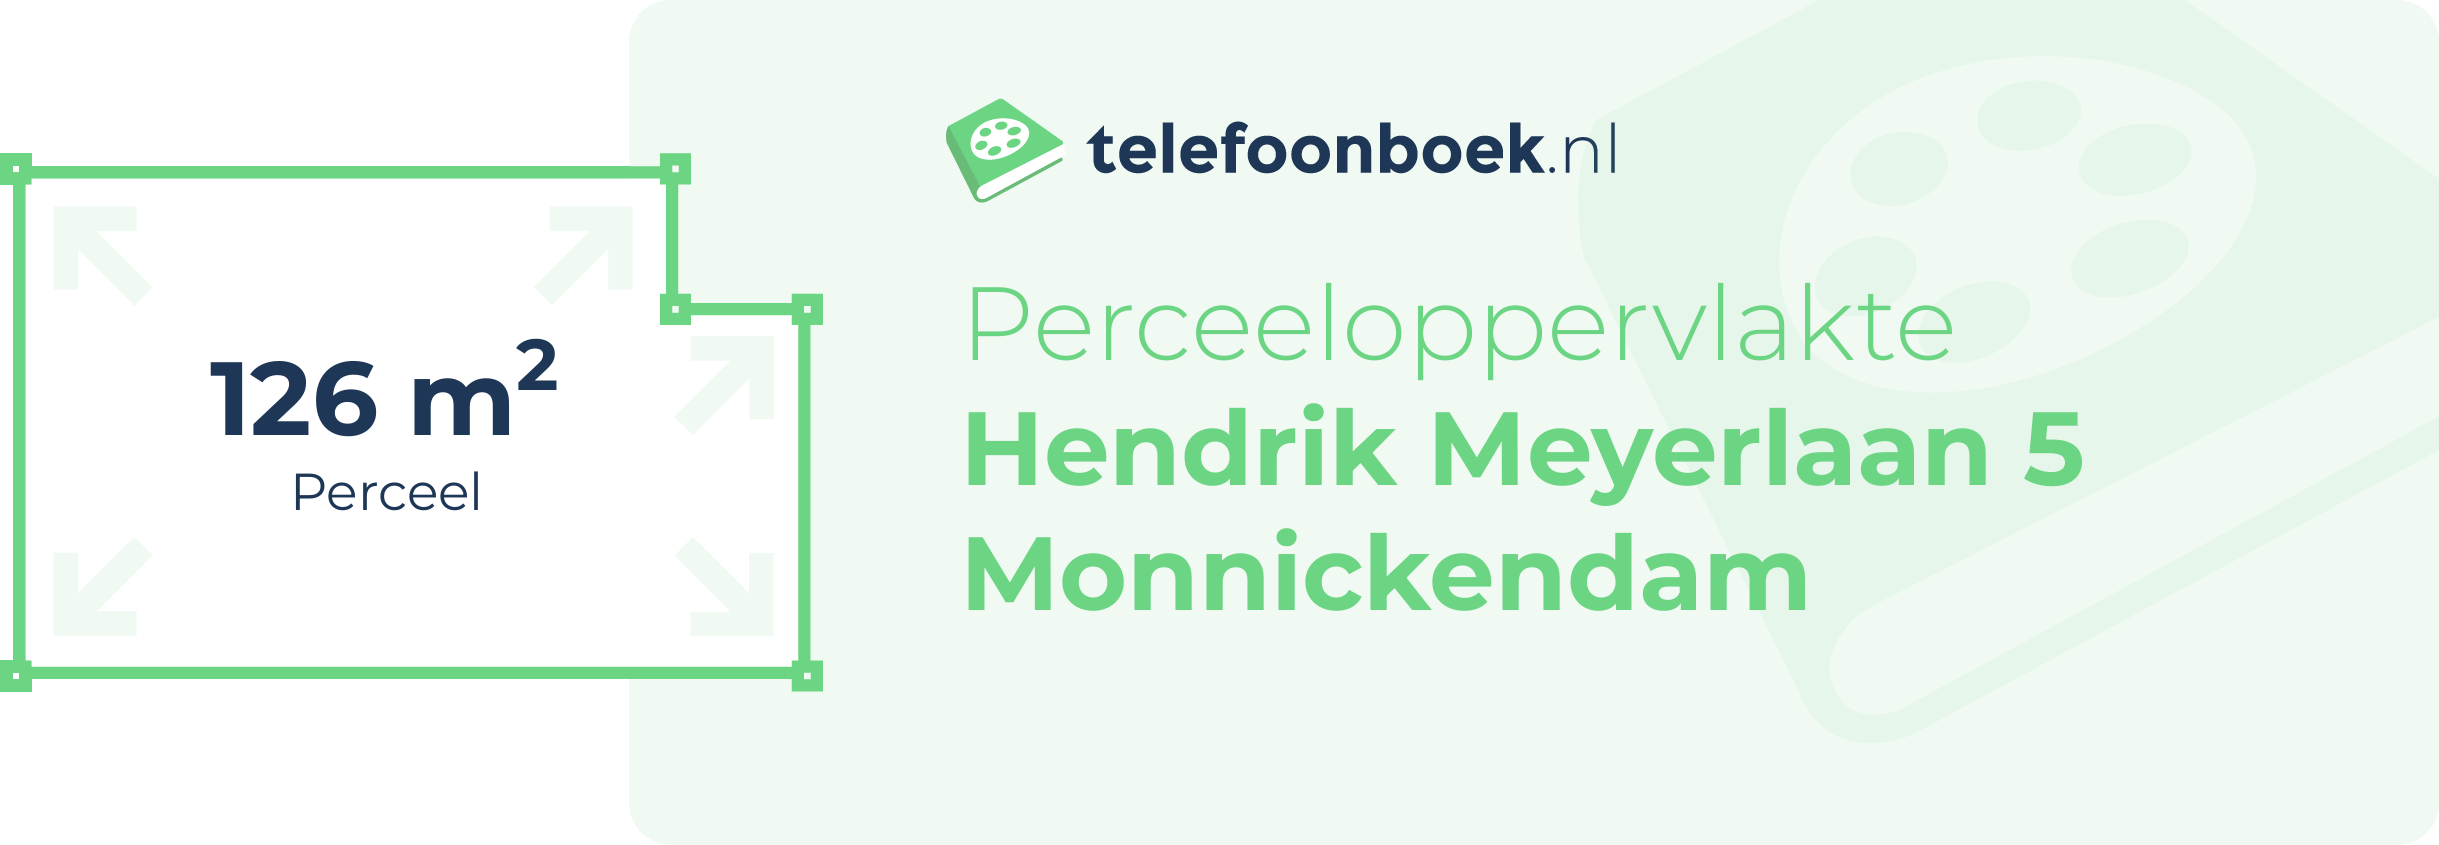 Perceeloppervlakte Hendrik Meyerlaan 5 Monnickendam